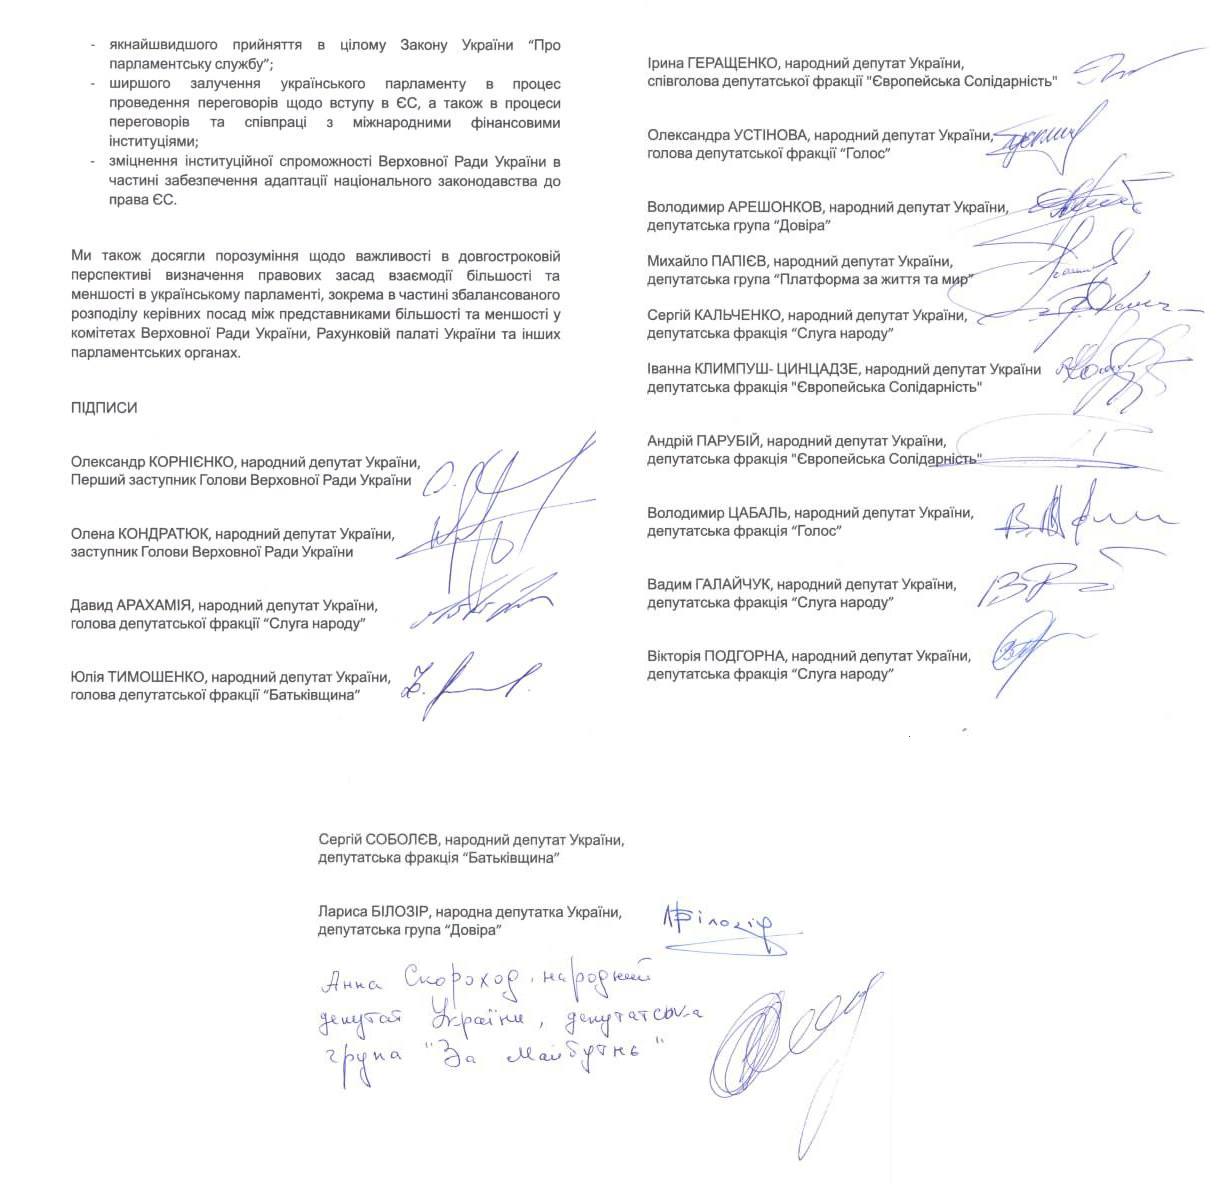 Представники ВРУ підписали заяву, згідно з якою до кінця воєнного стану в Україні вибори не відбудуться